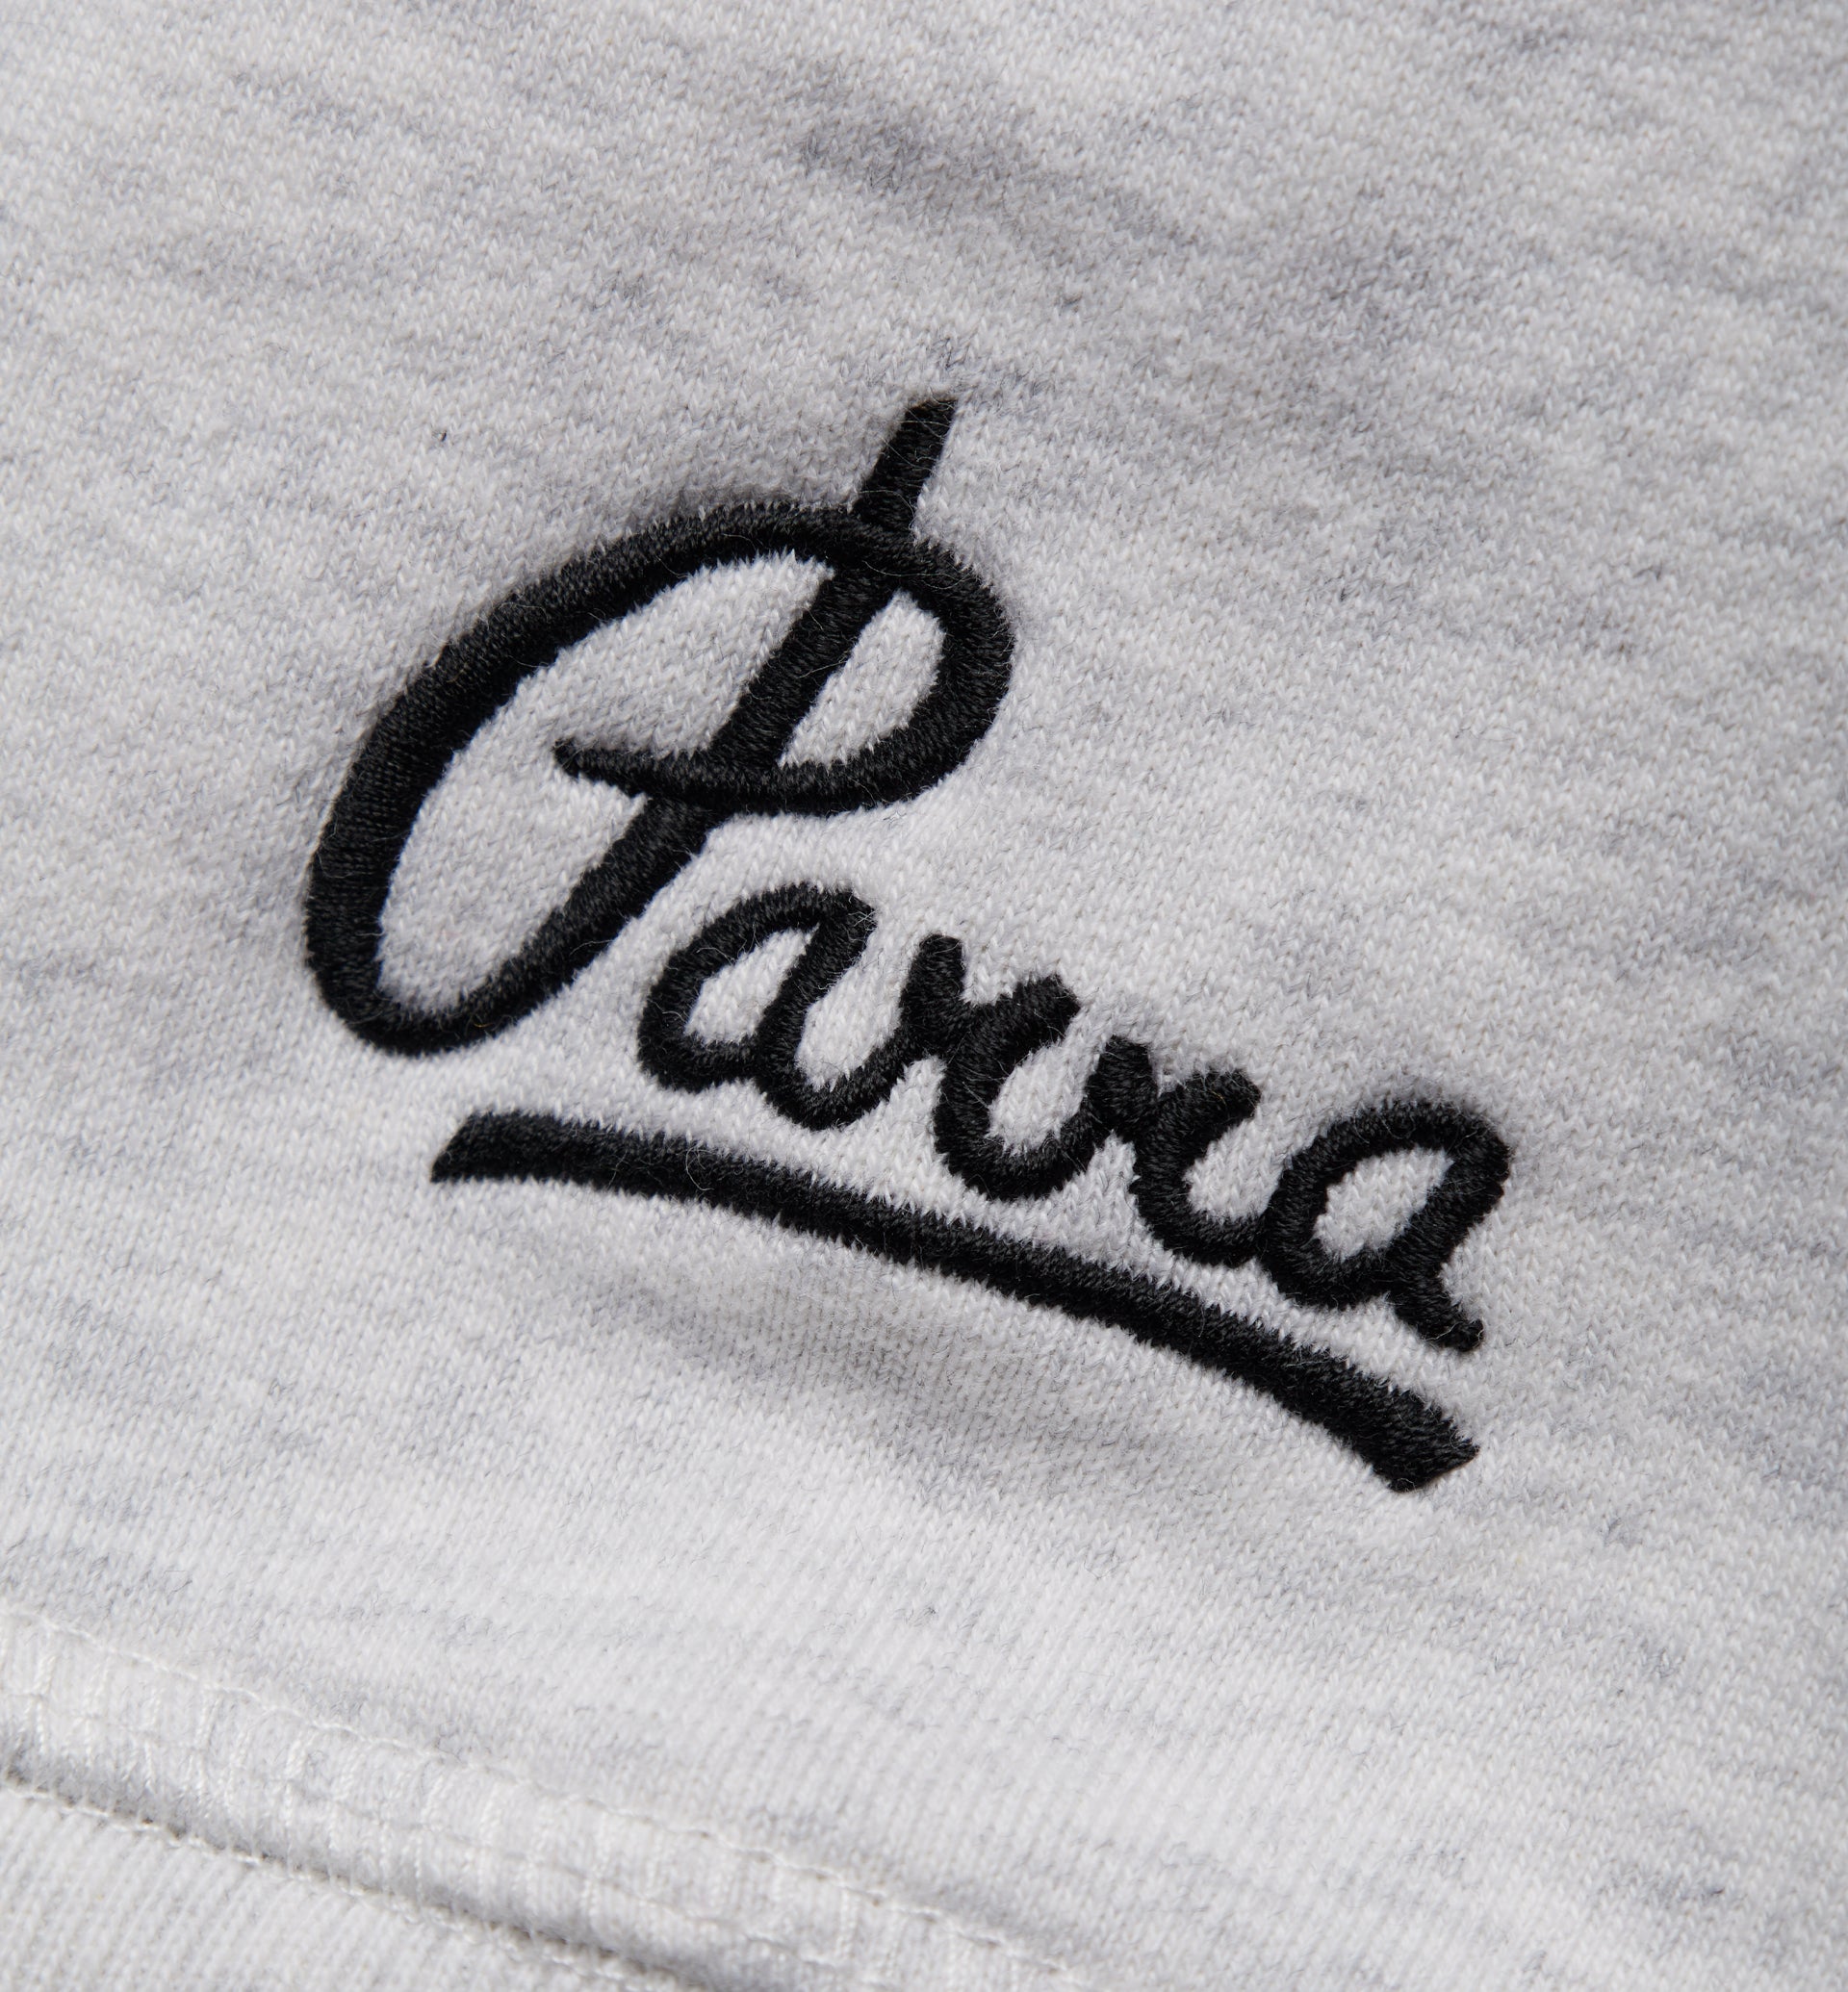 Parra - self defense hooded sweatshirt